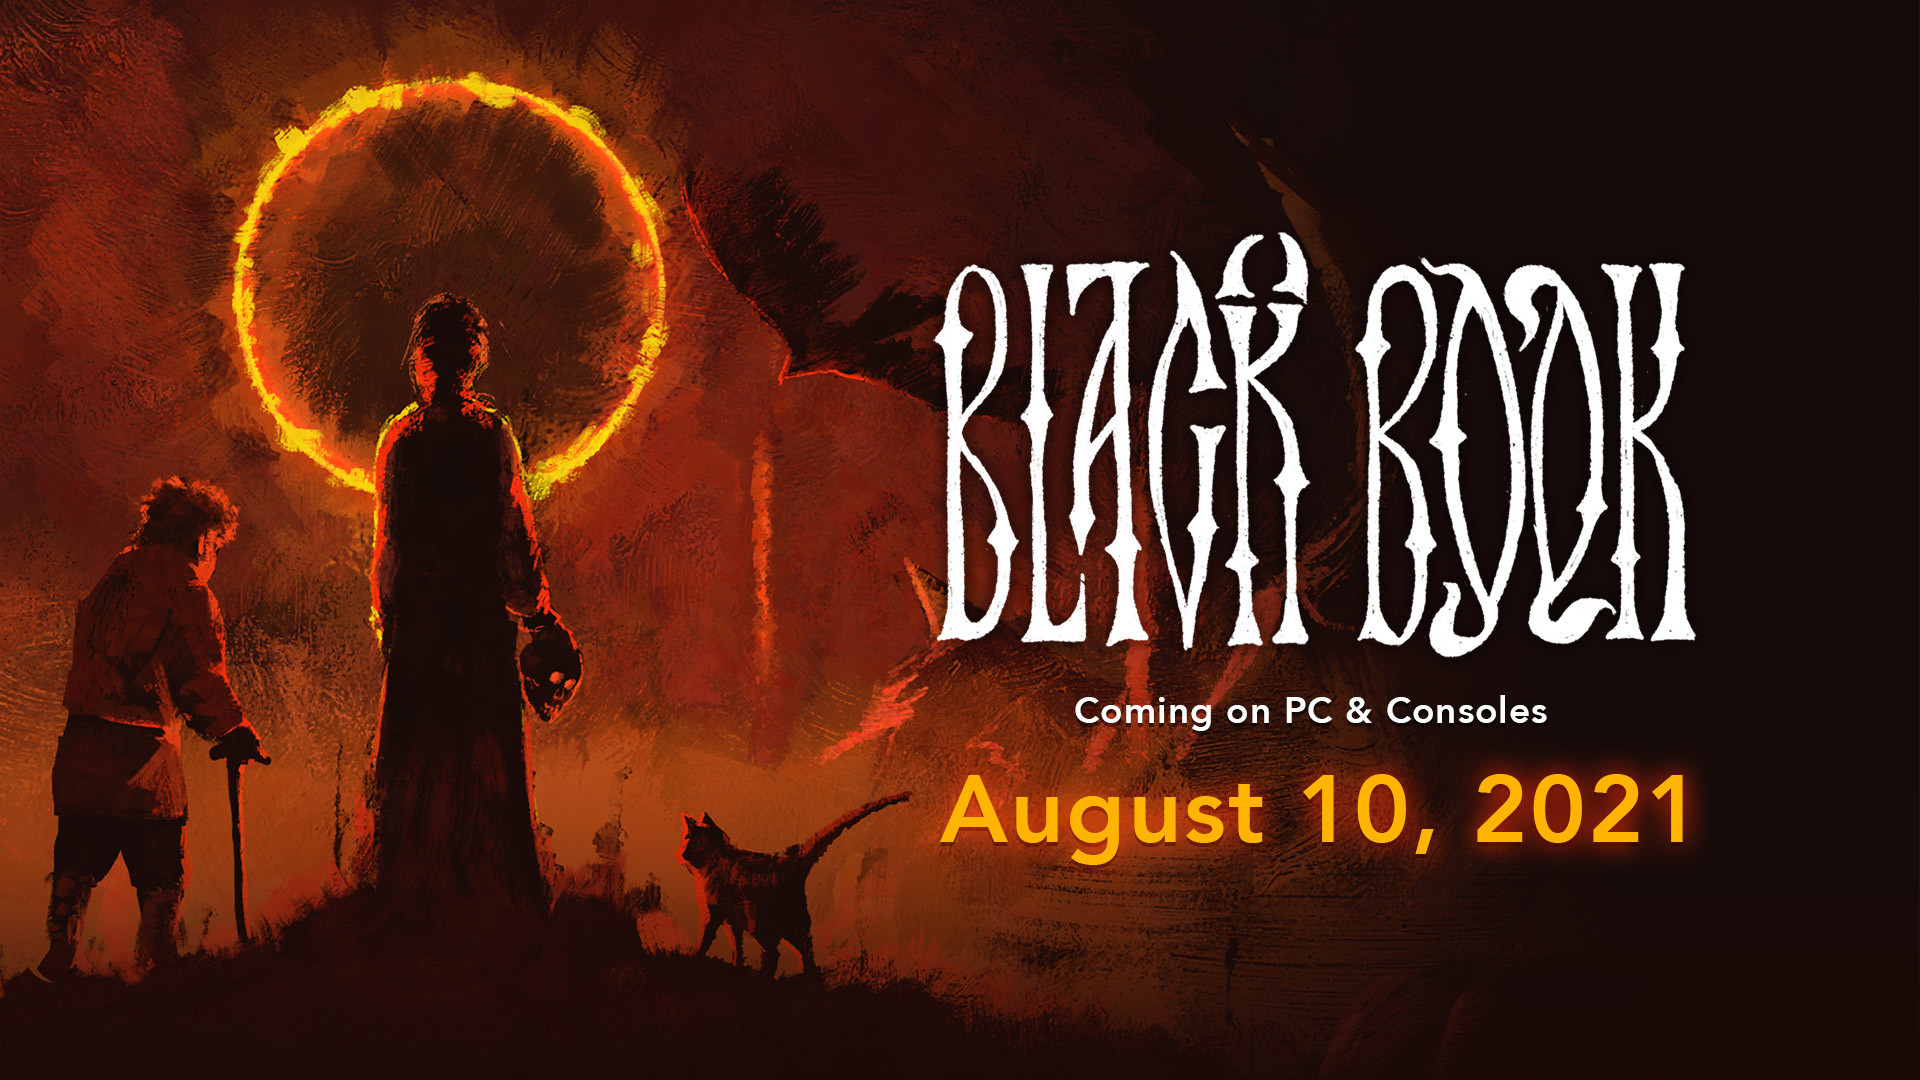 Российская ролевая игра Black Book выходит 10 августа 